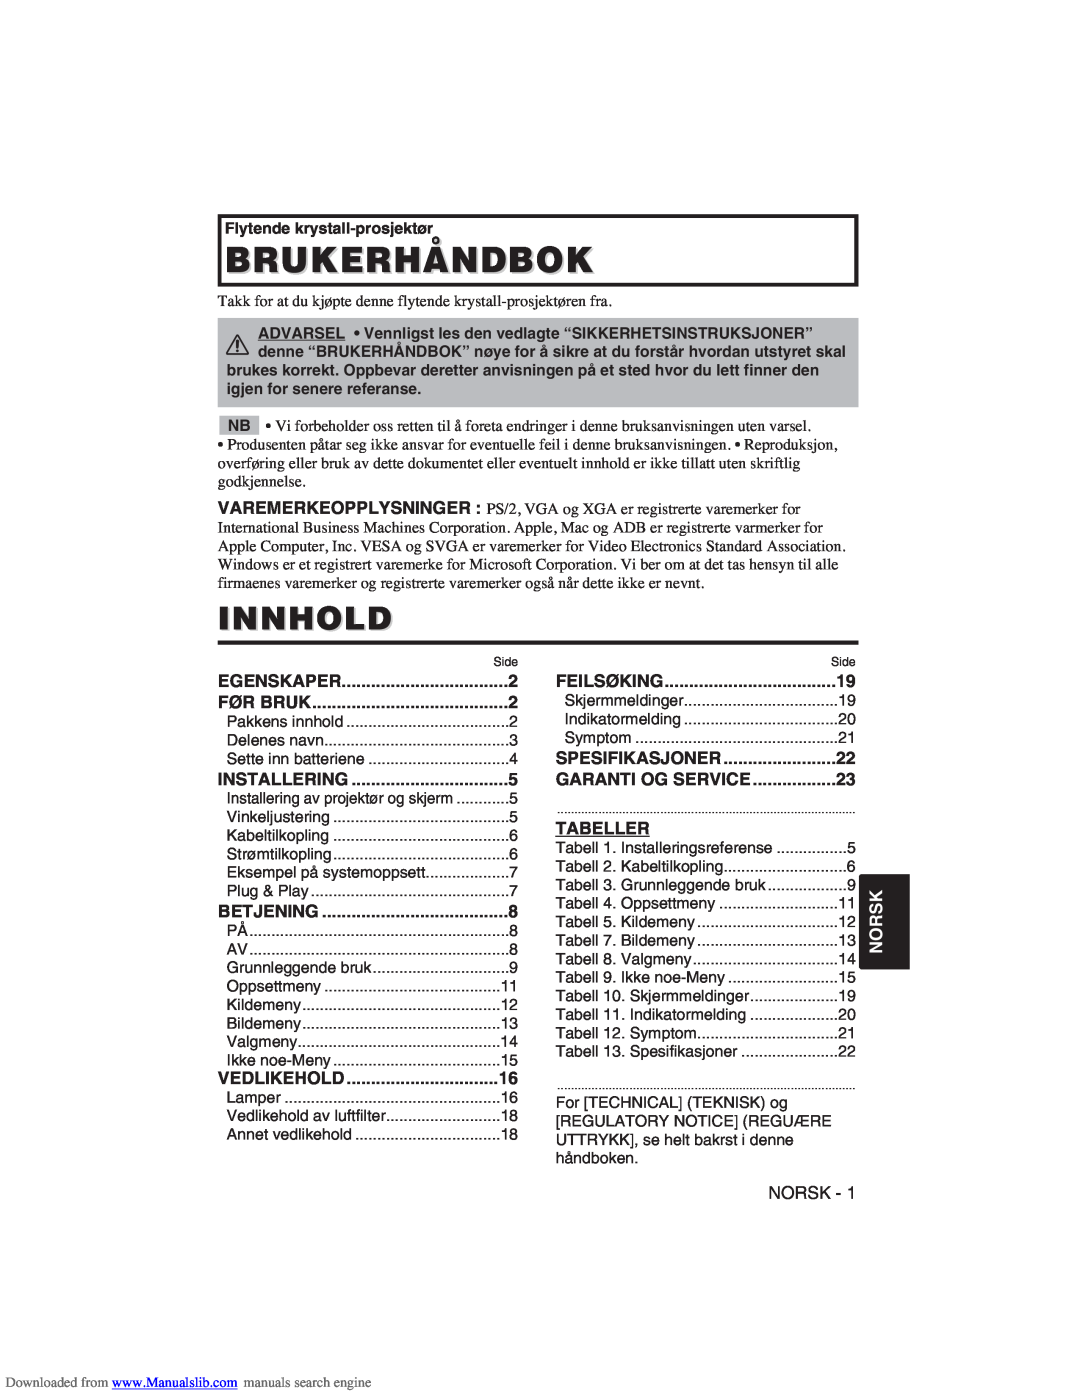 Hitachi CP-X275W user manual Brukerhåndbok, Innhold, Tabeller, Norsk 